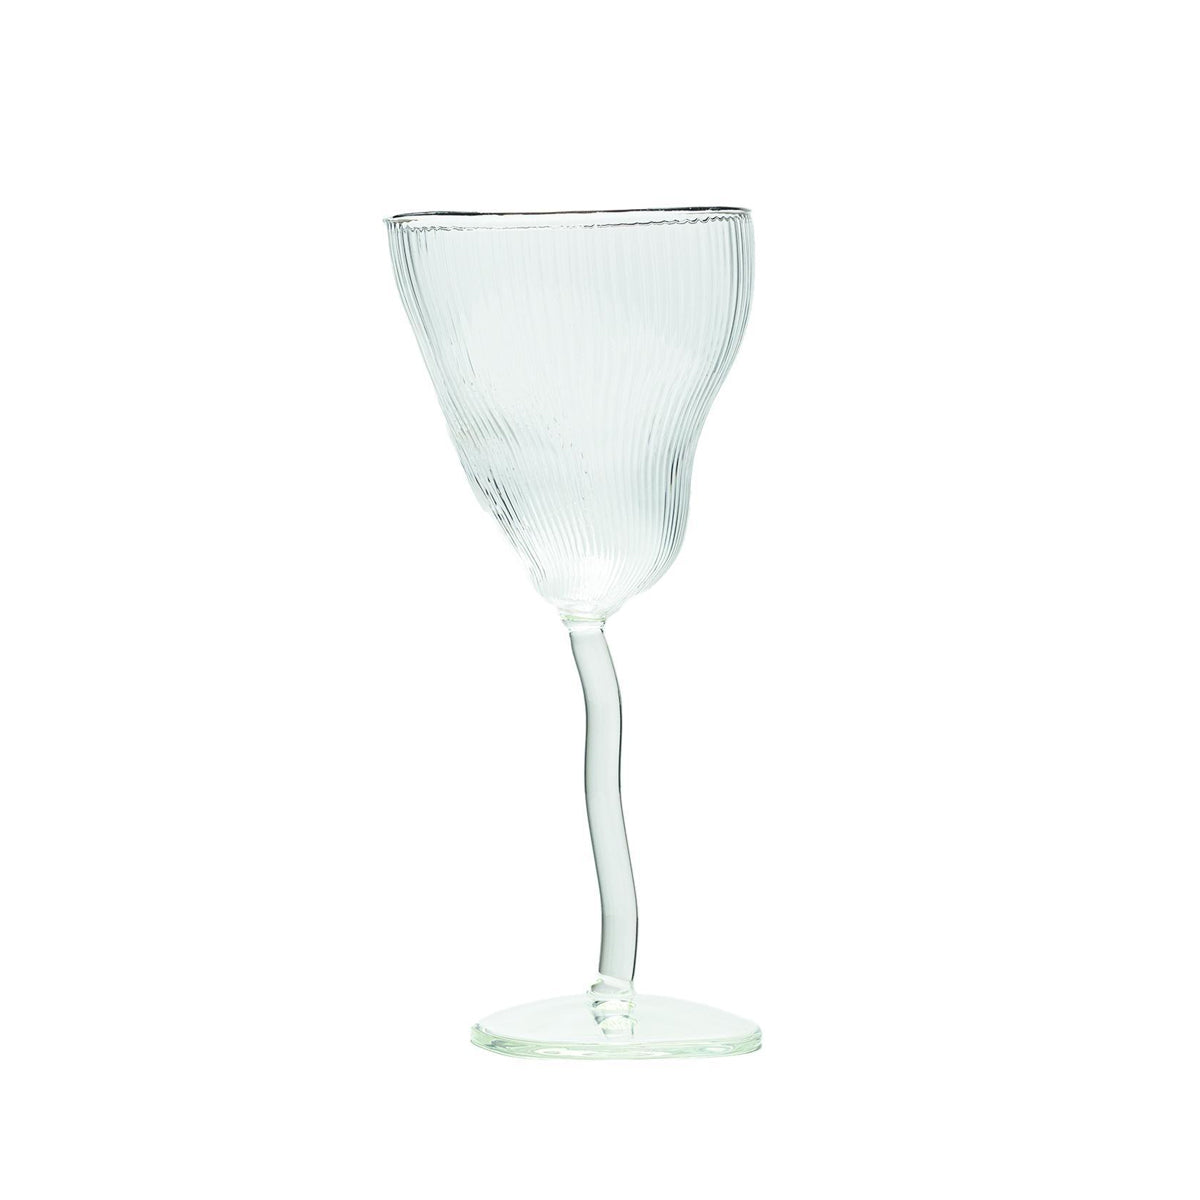 Seletti X Diesel Living Classics On Acid - Wine Glass